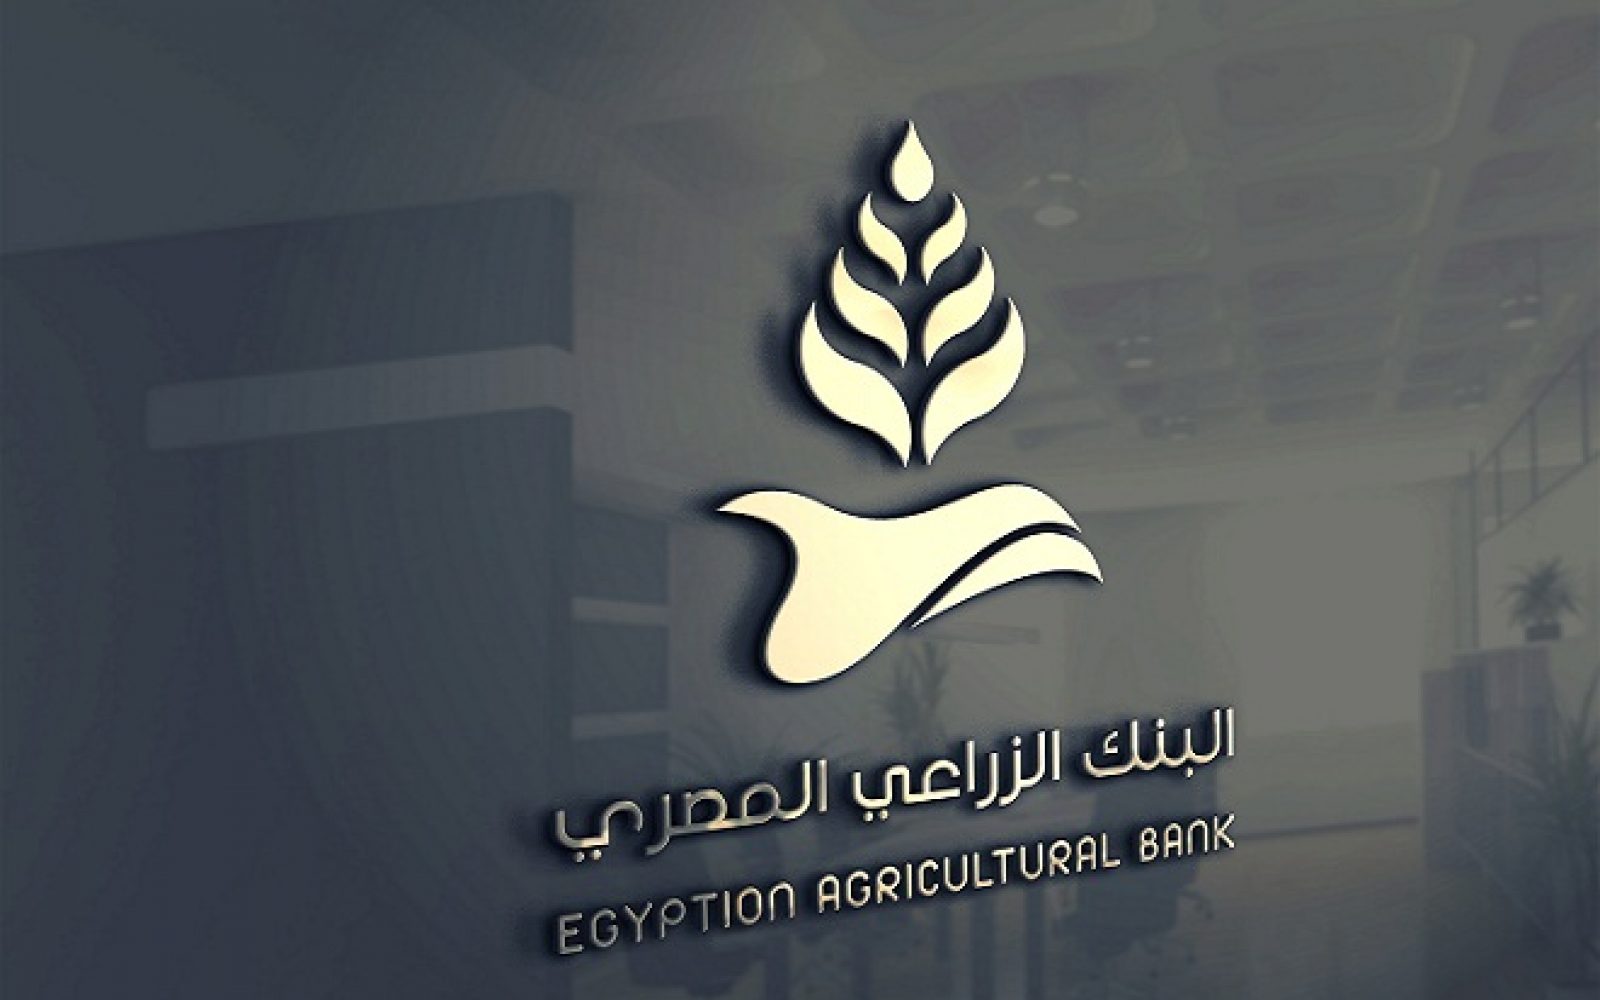 مقدمة من البنك الزراعي المصري  آلاف كوبون لشراء سلع غذائية للأسر الأولى بالرعاية بقنا